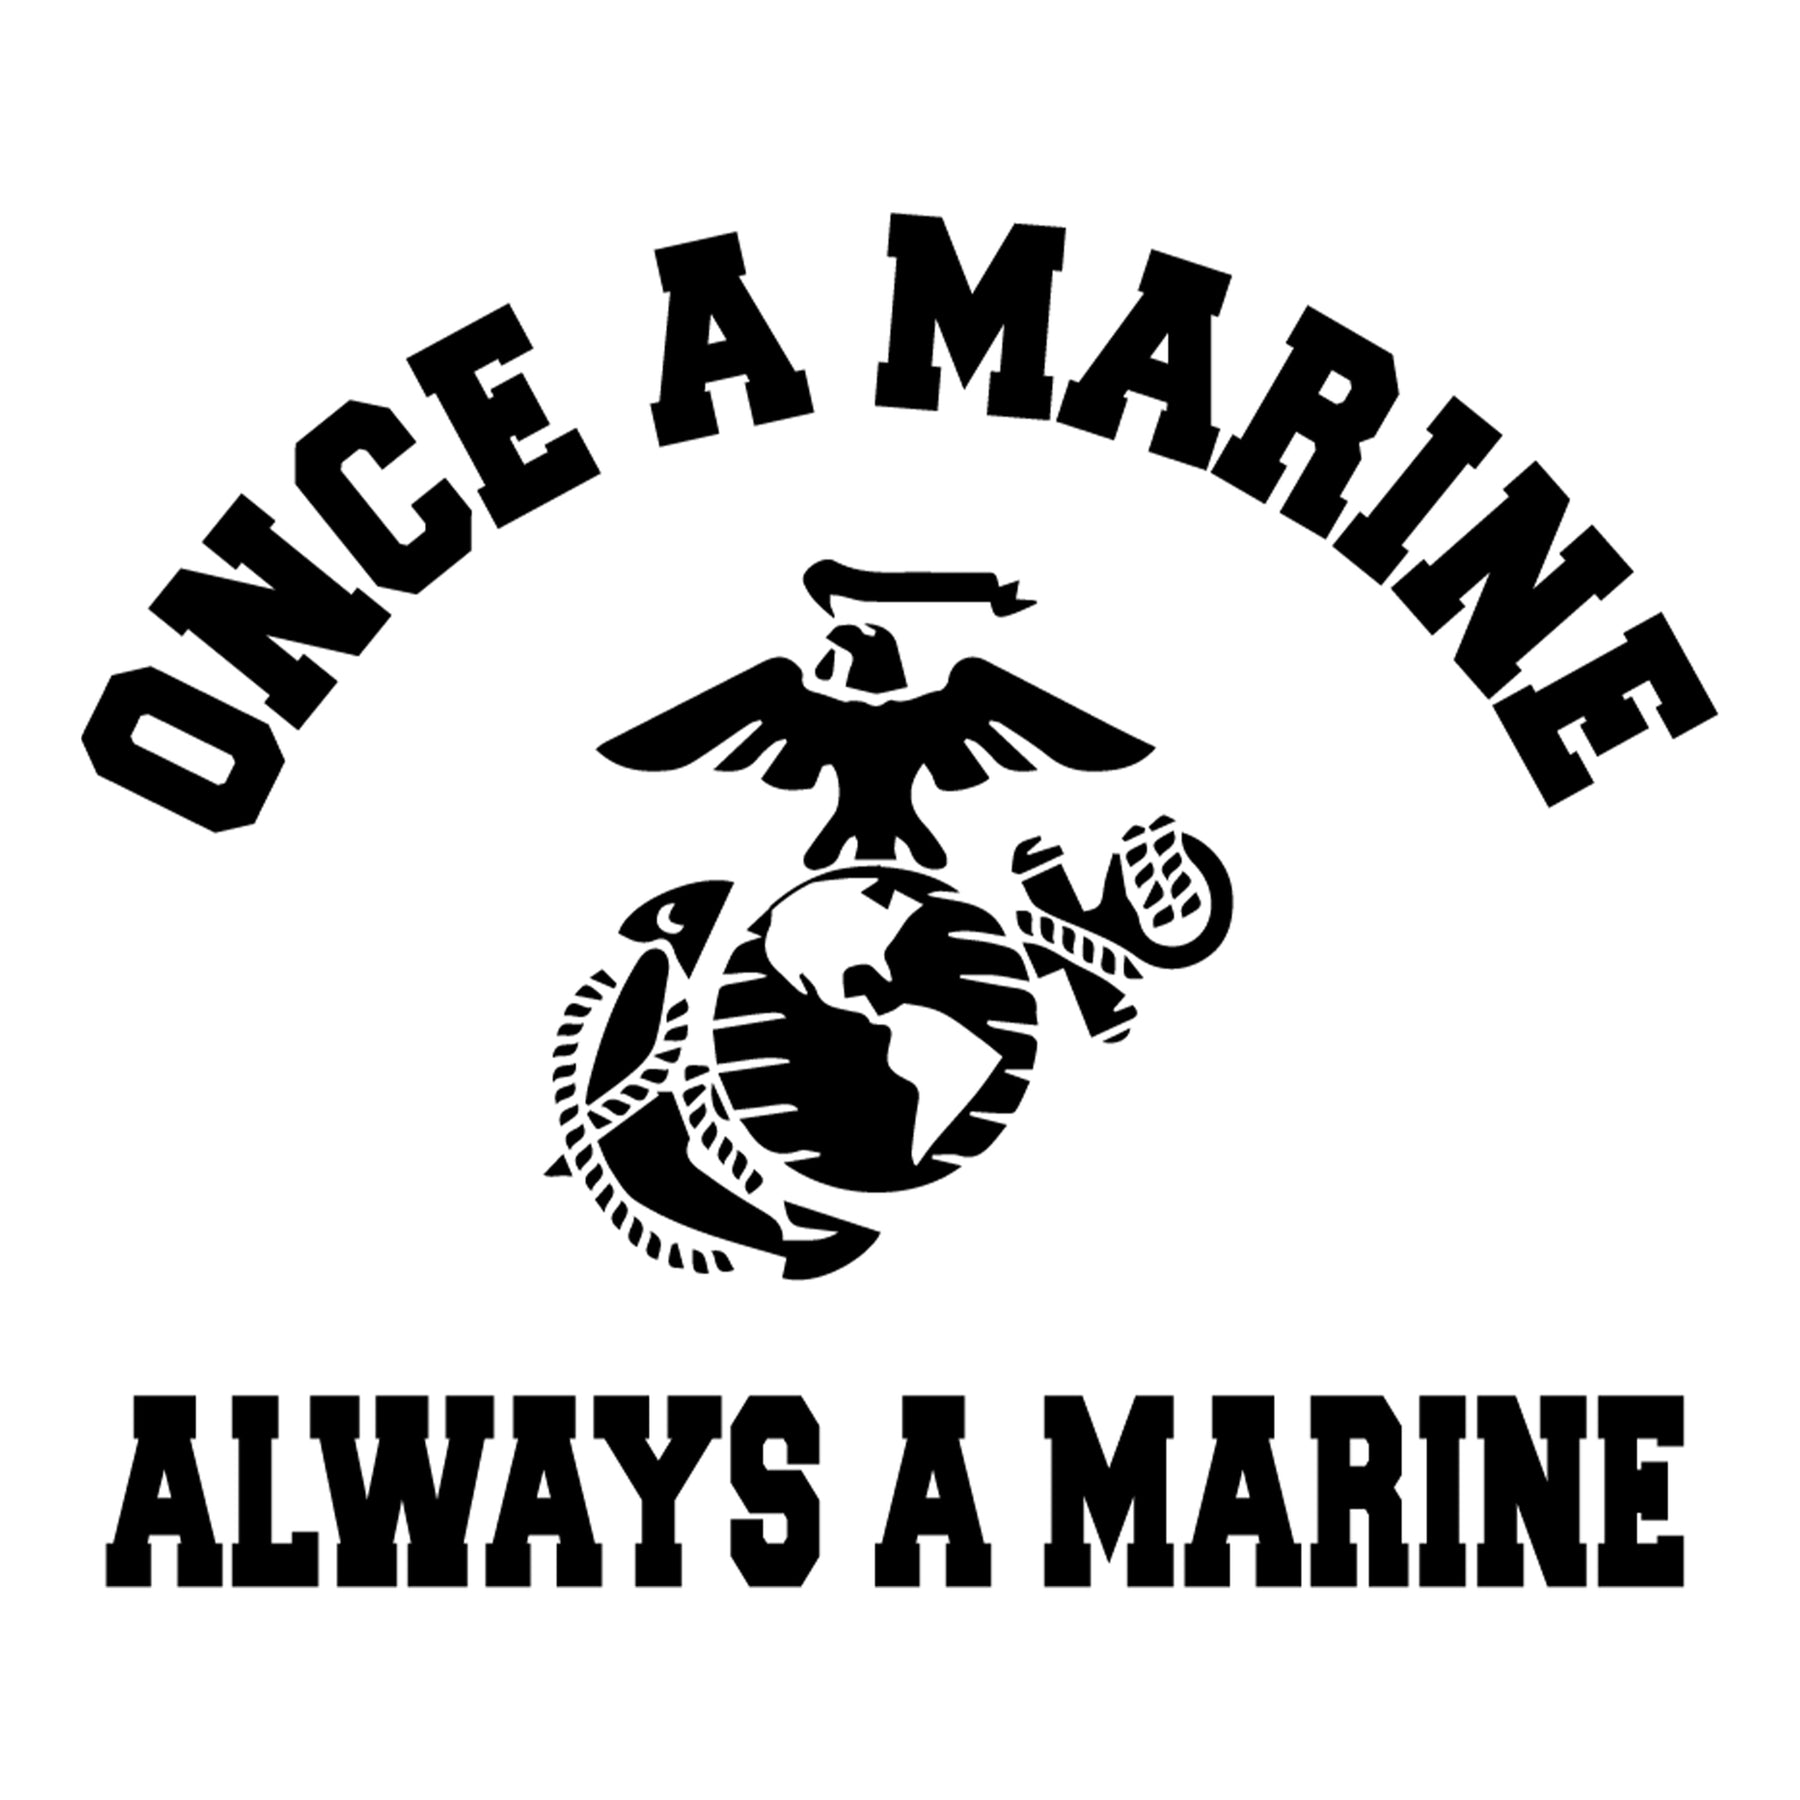 Once A Marine, Always A Marine Tee